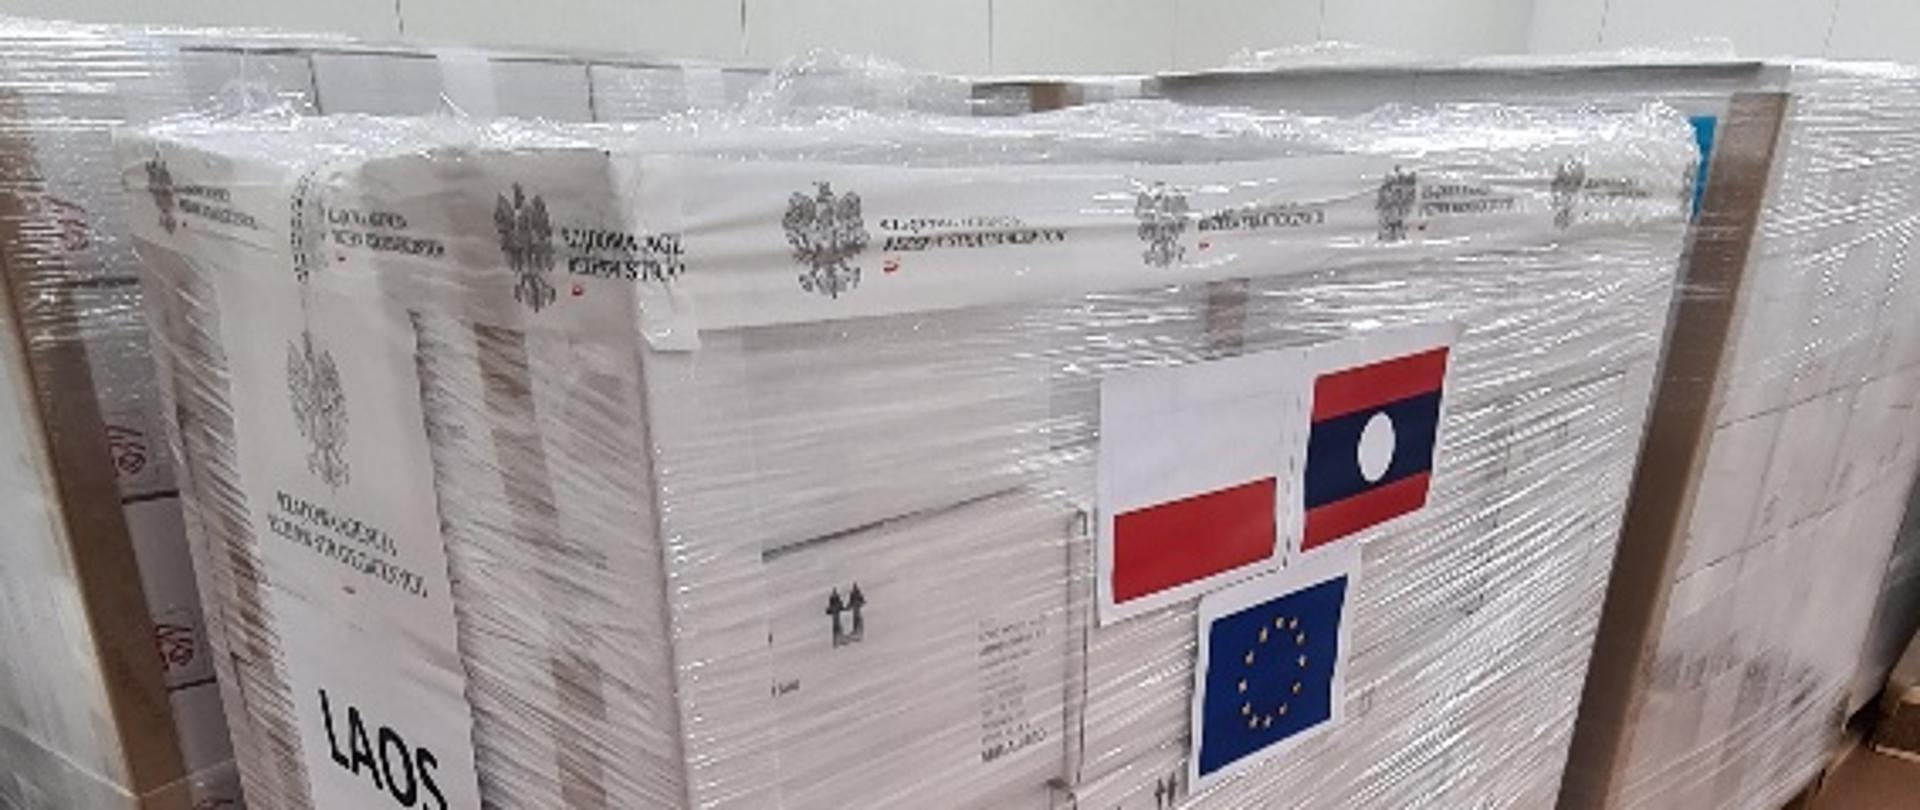 Zafoliowane paczki z naklejonymi flagami Polski, Laosu i Unii Europejskiej